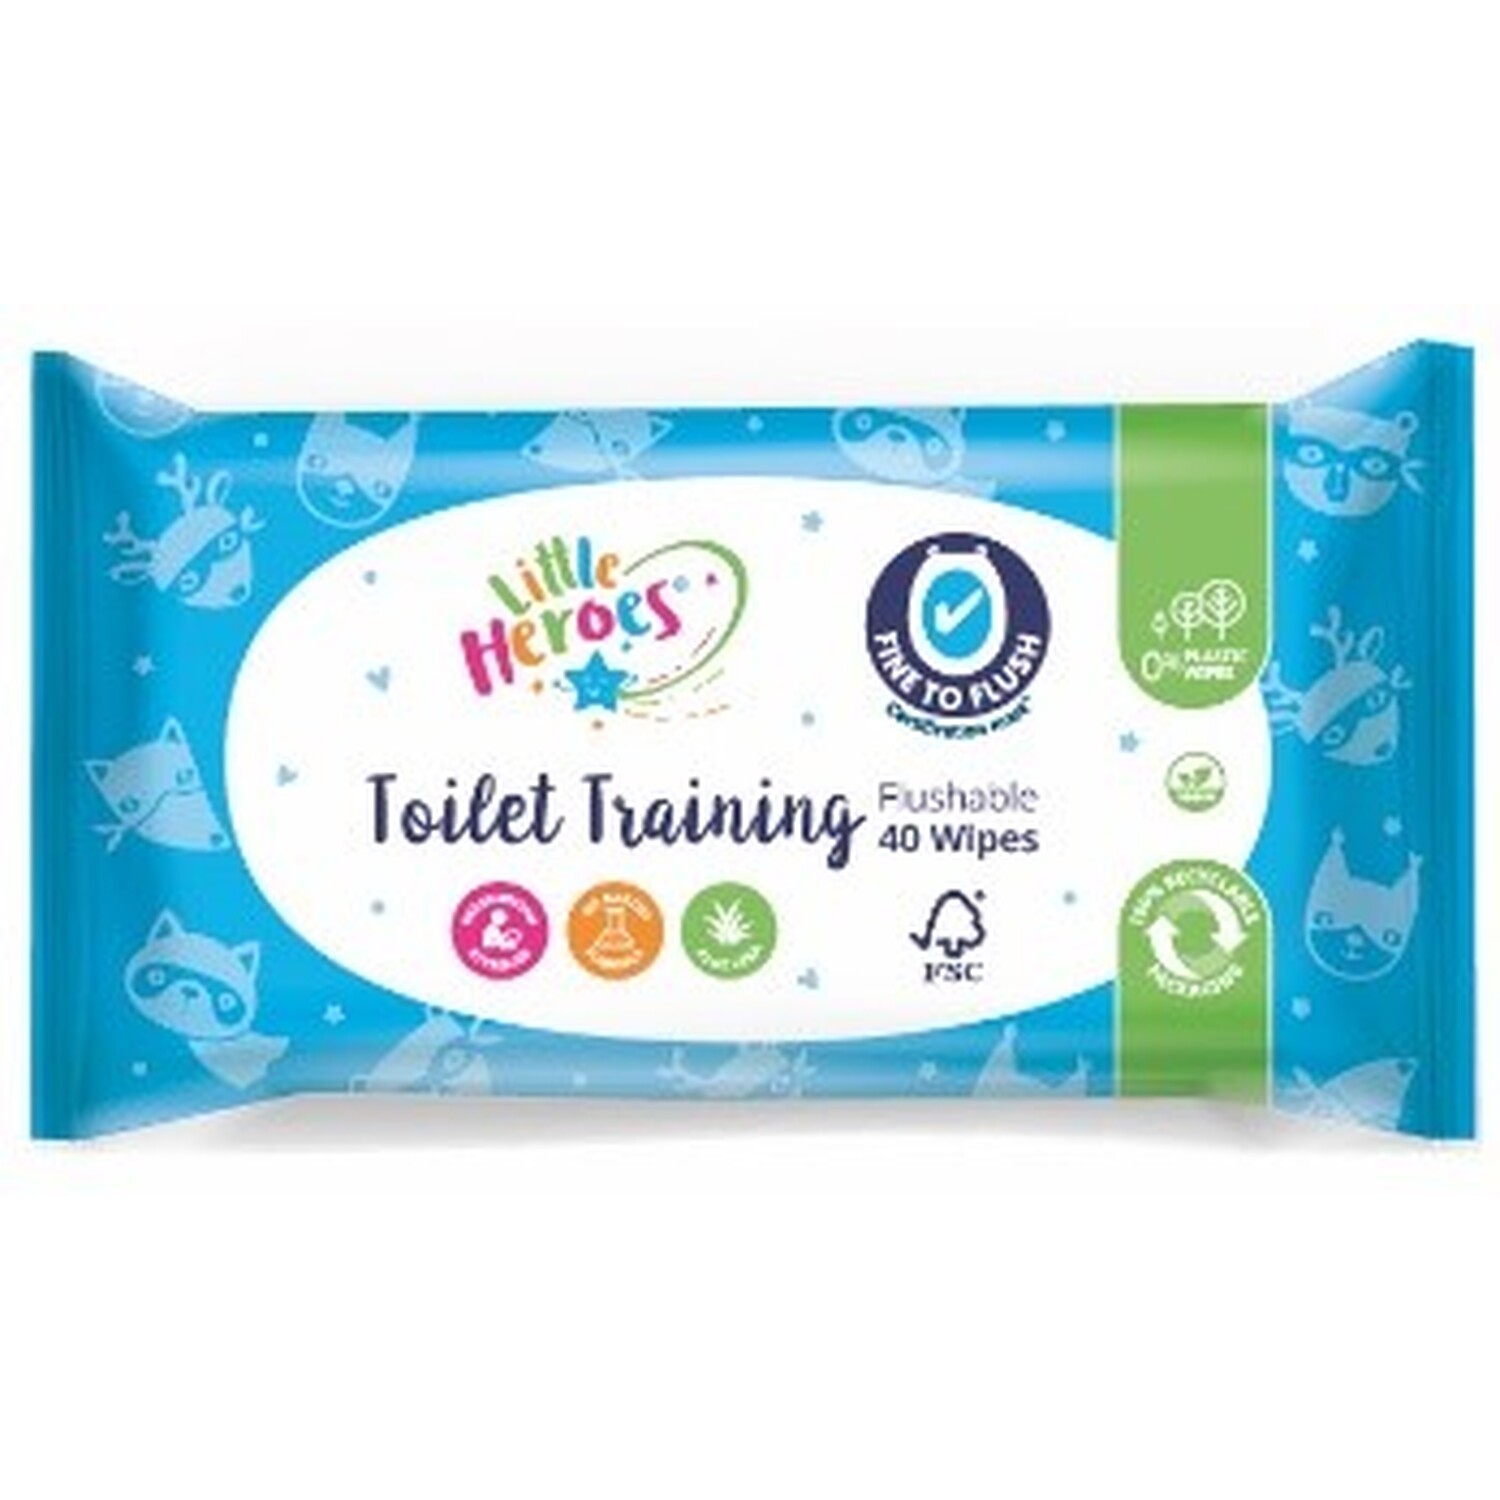 Toilet Training Flushable Wipes - Blue Image